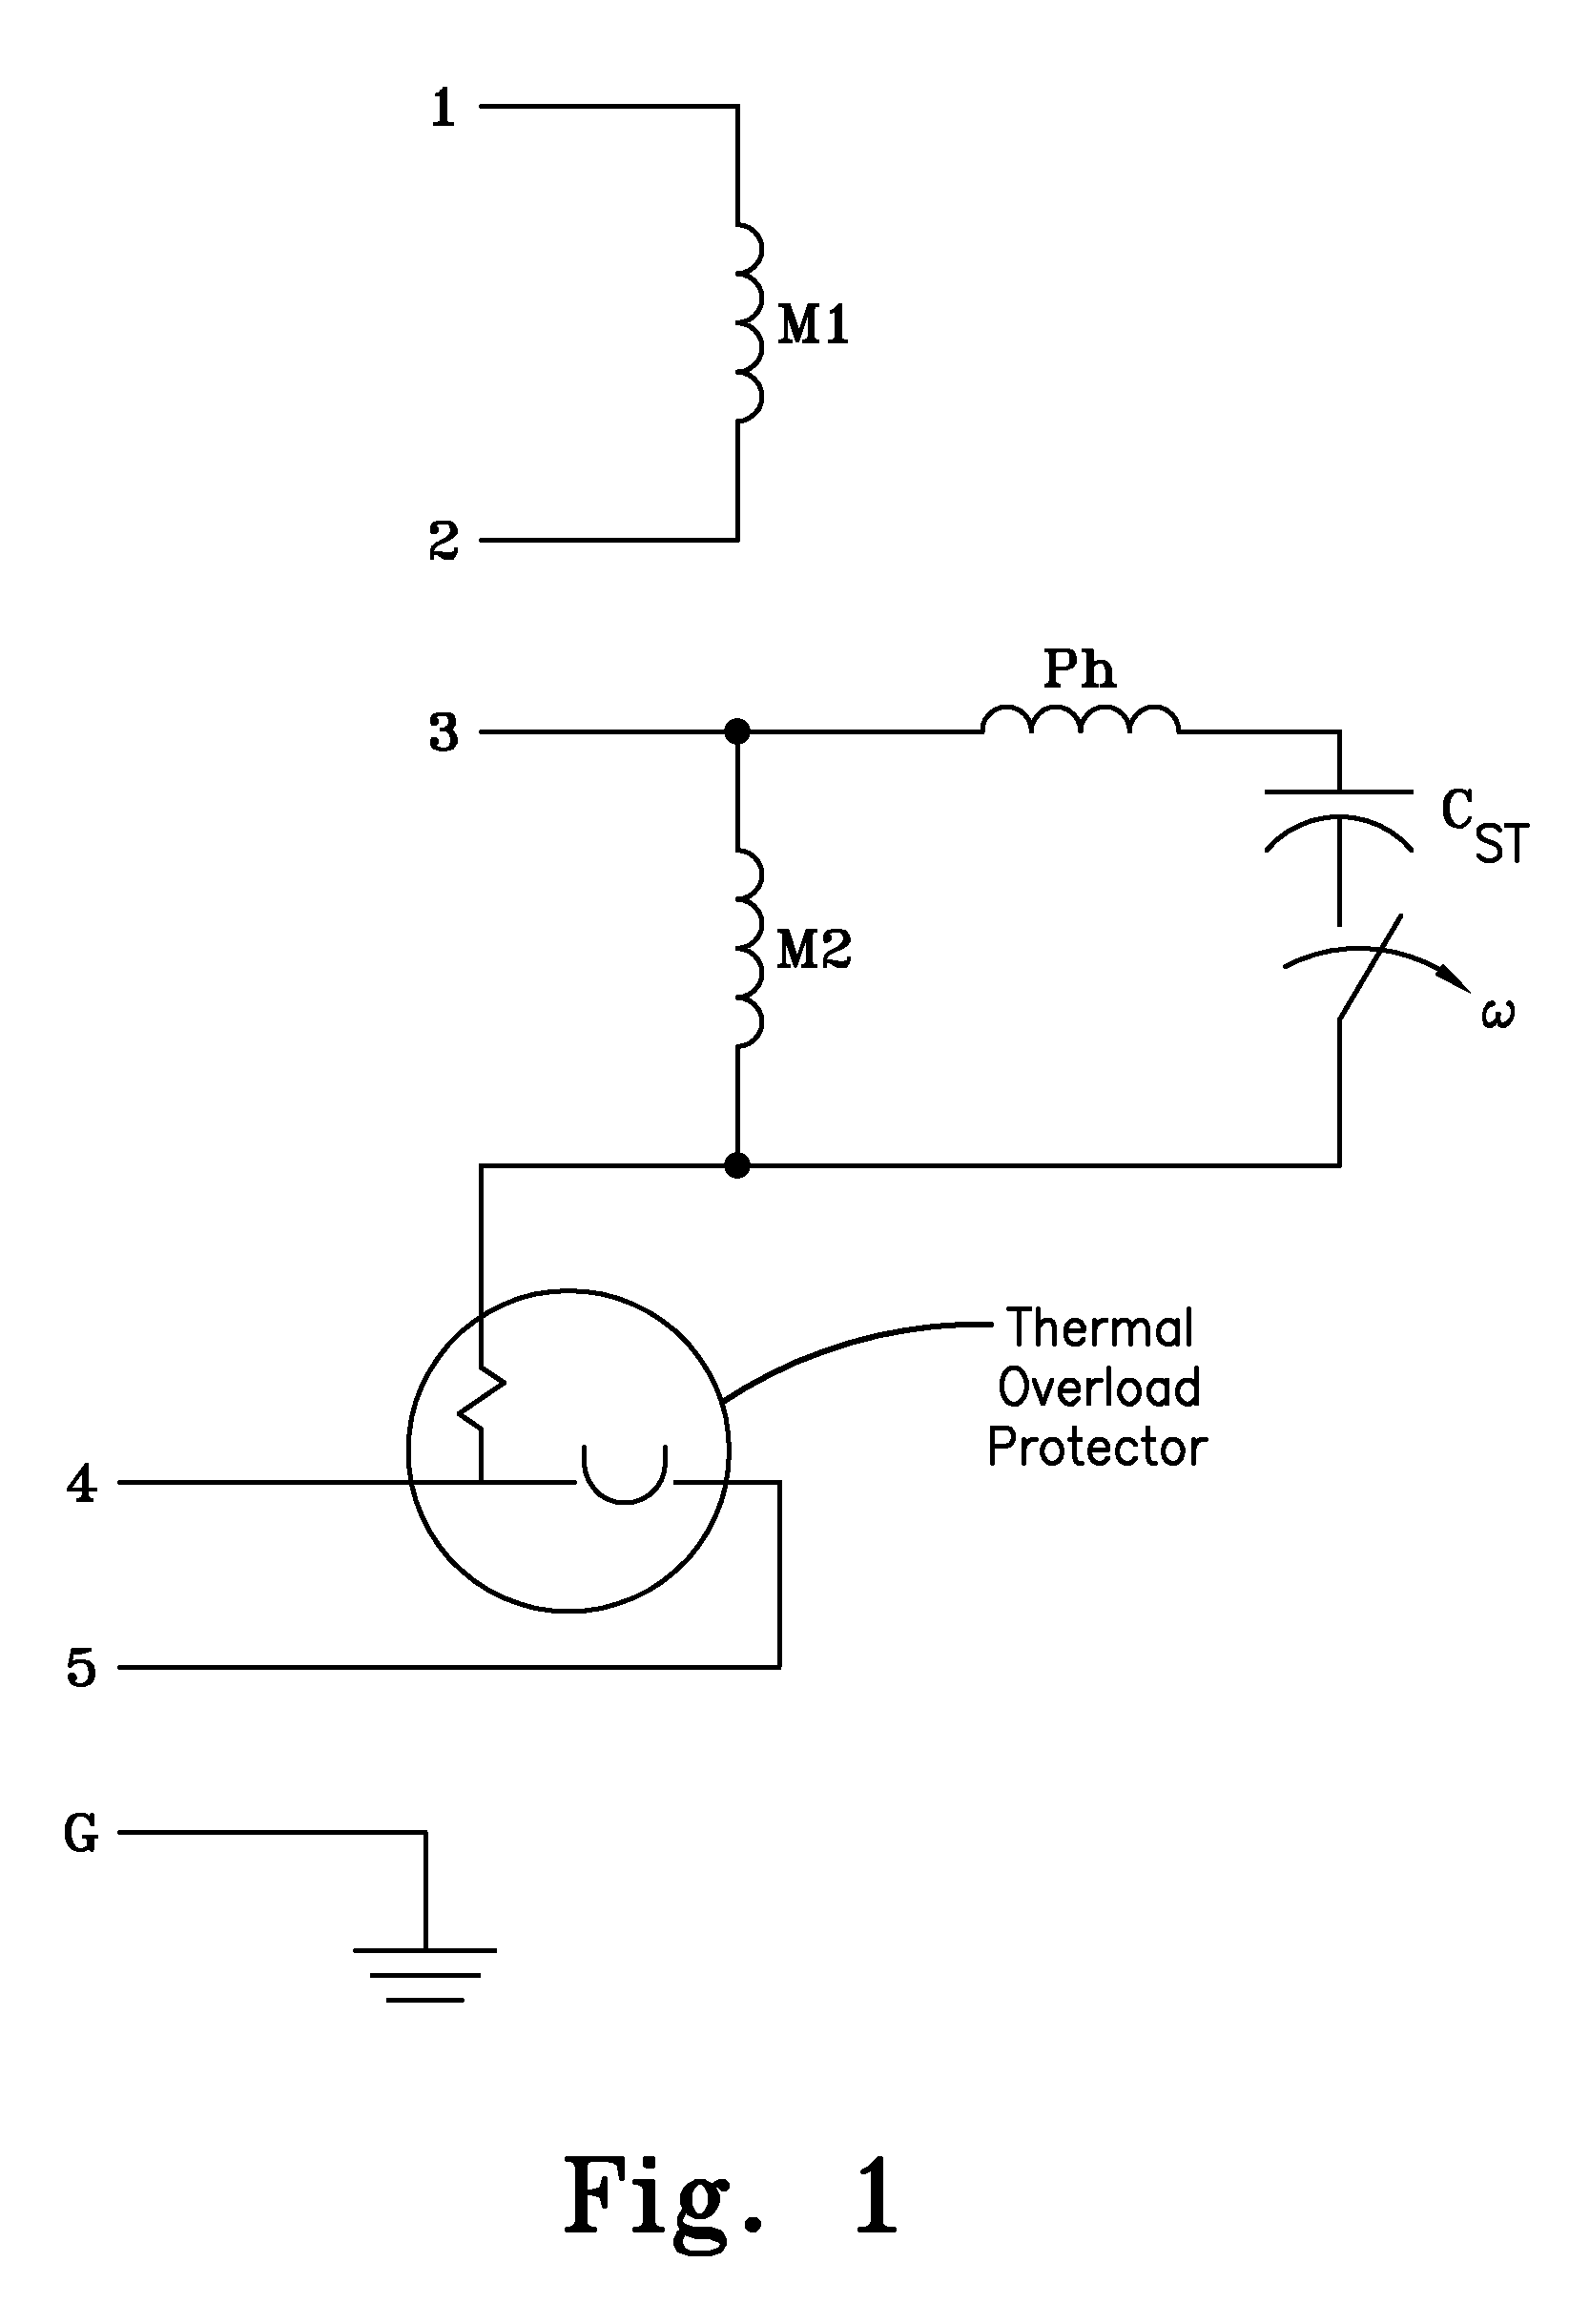 Multi-voltage pump with discreet voltage cords